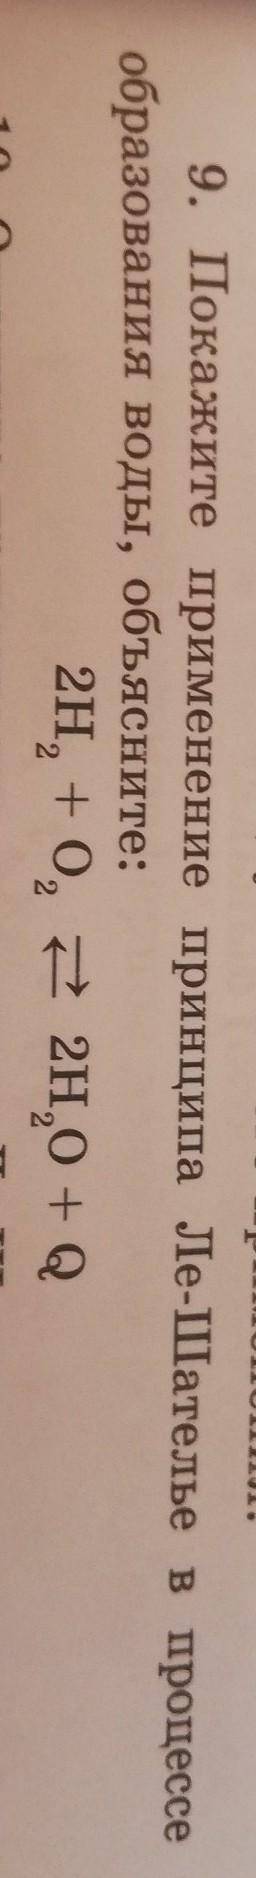 Покажите применение принципа Ле-Шателье в процессе образования воды, объясните: 2H2+O2=2H2O+Q​